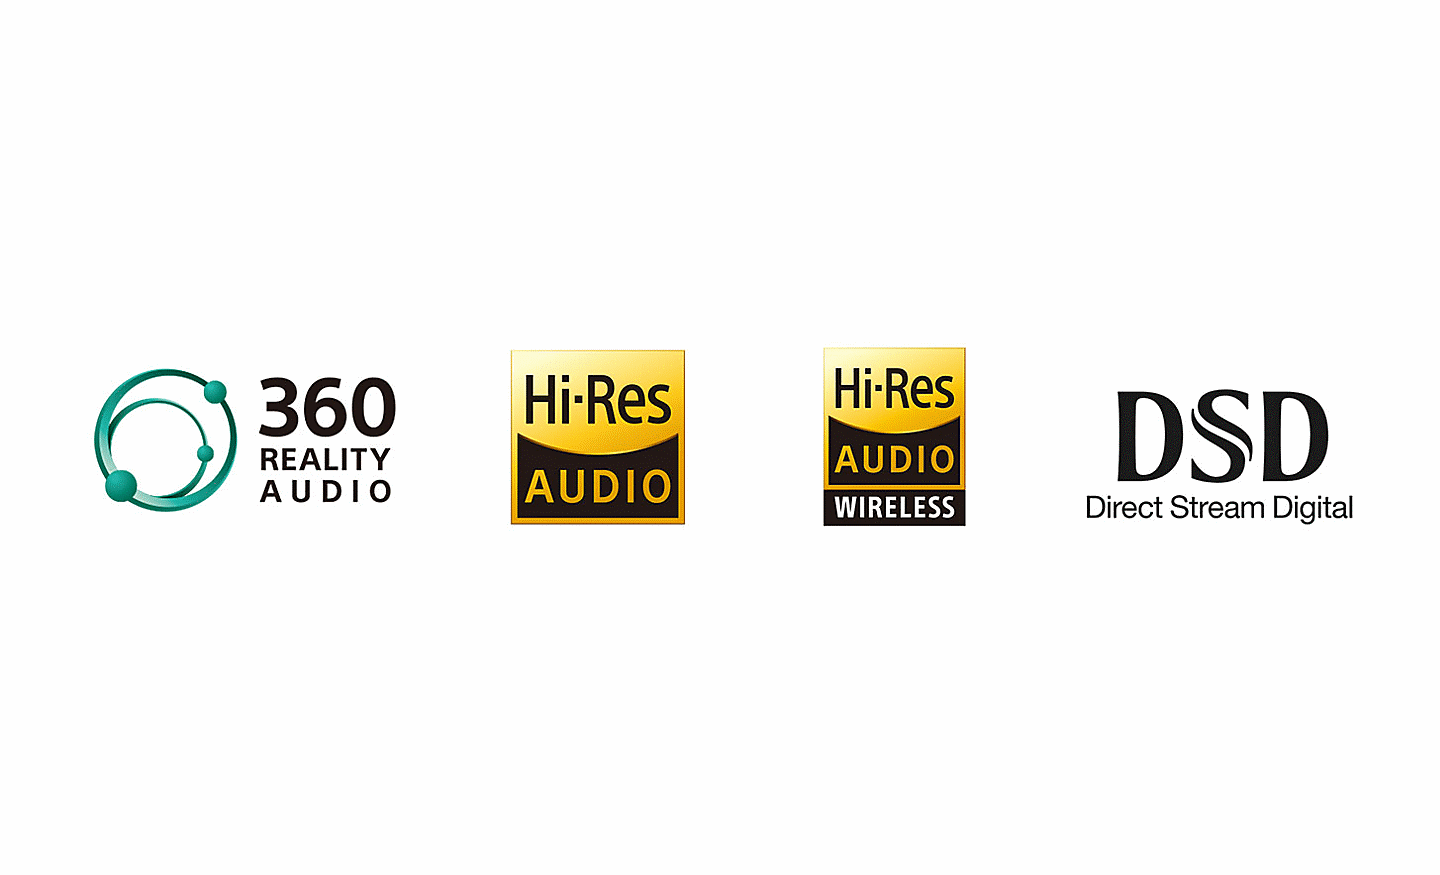 לוגו Reality Audio ‏360, לוגו שמע ברזולוציה גבוהה, לוגו שמע ברזולוציה גבוהה באופן אלחוטי, לוגו DSD הזרמה דיגיטלית ישירה